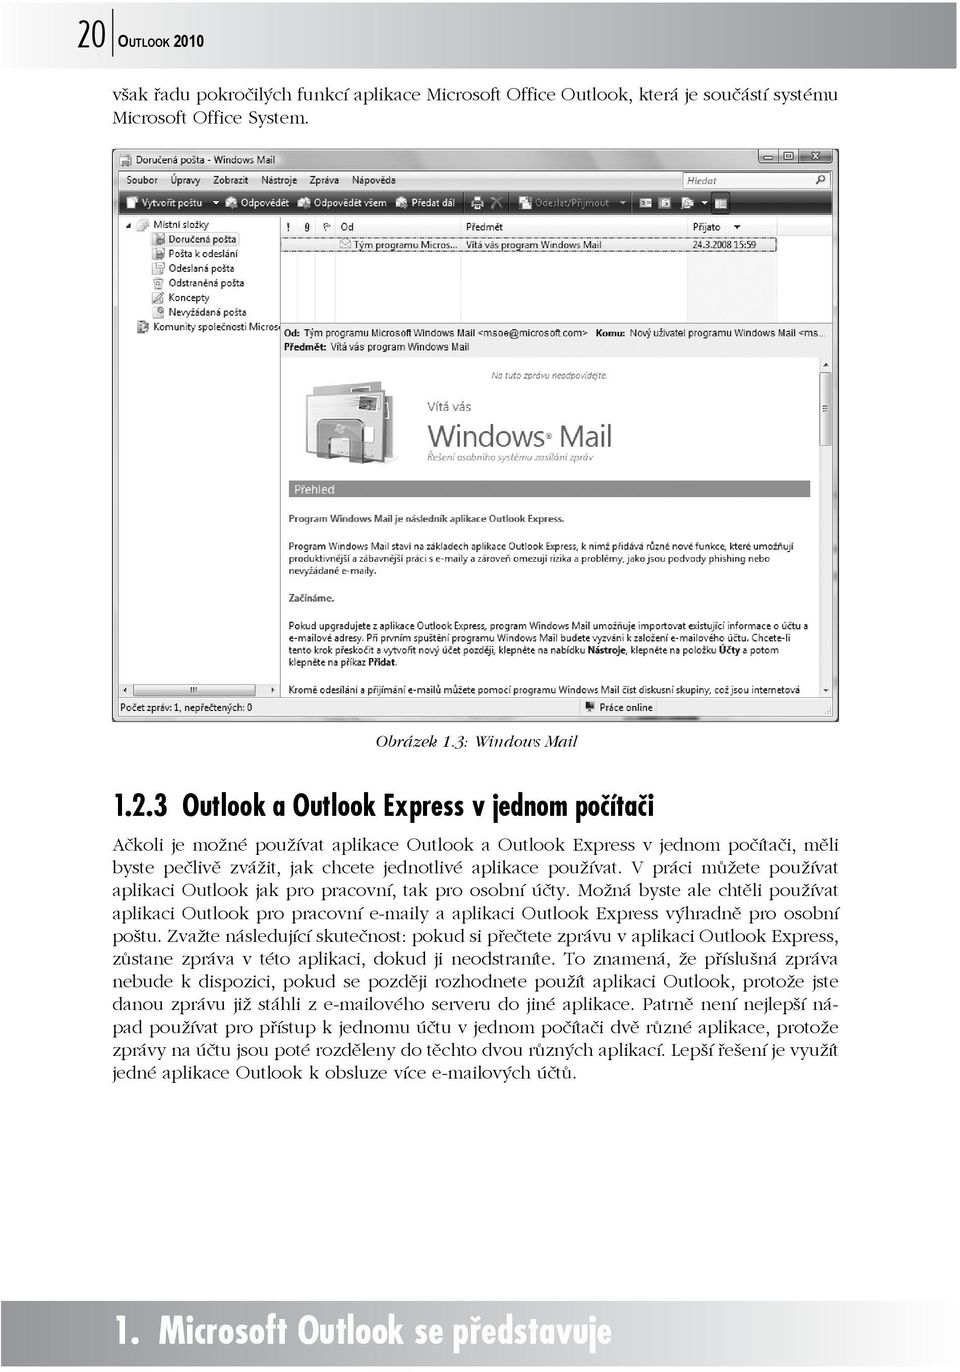 Možná byste ale chtěli používat aplikaci Outlook pro pracovní e-maily a aplikaci Outlook Express výhradně pro osobní poštu.